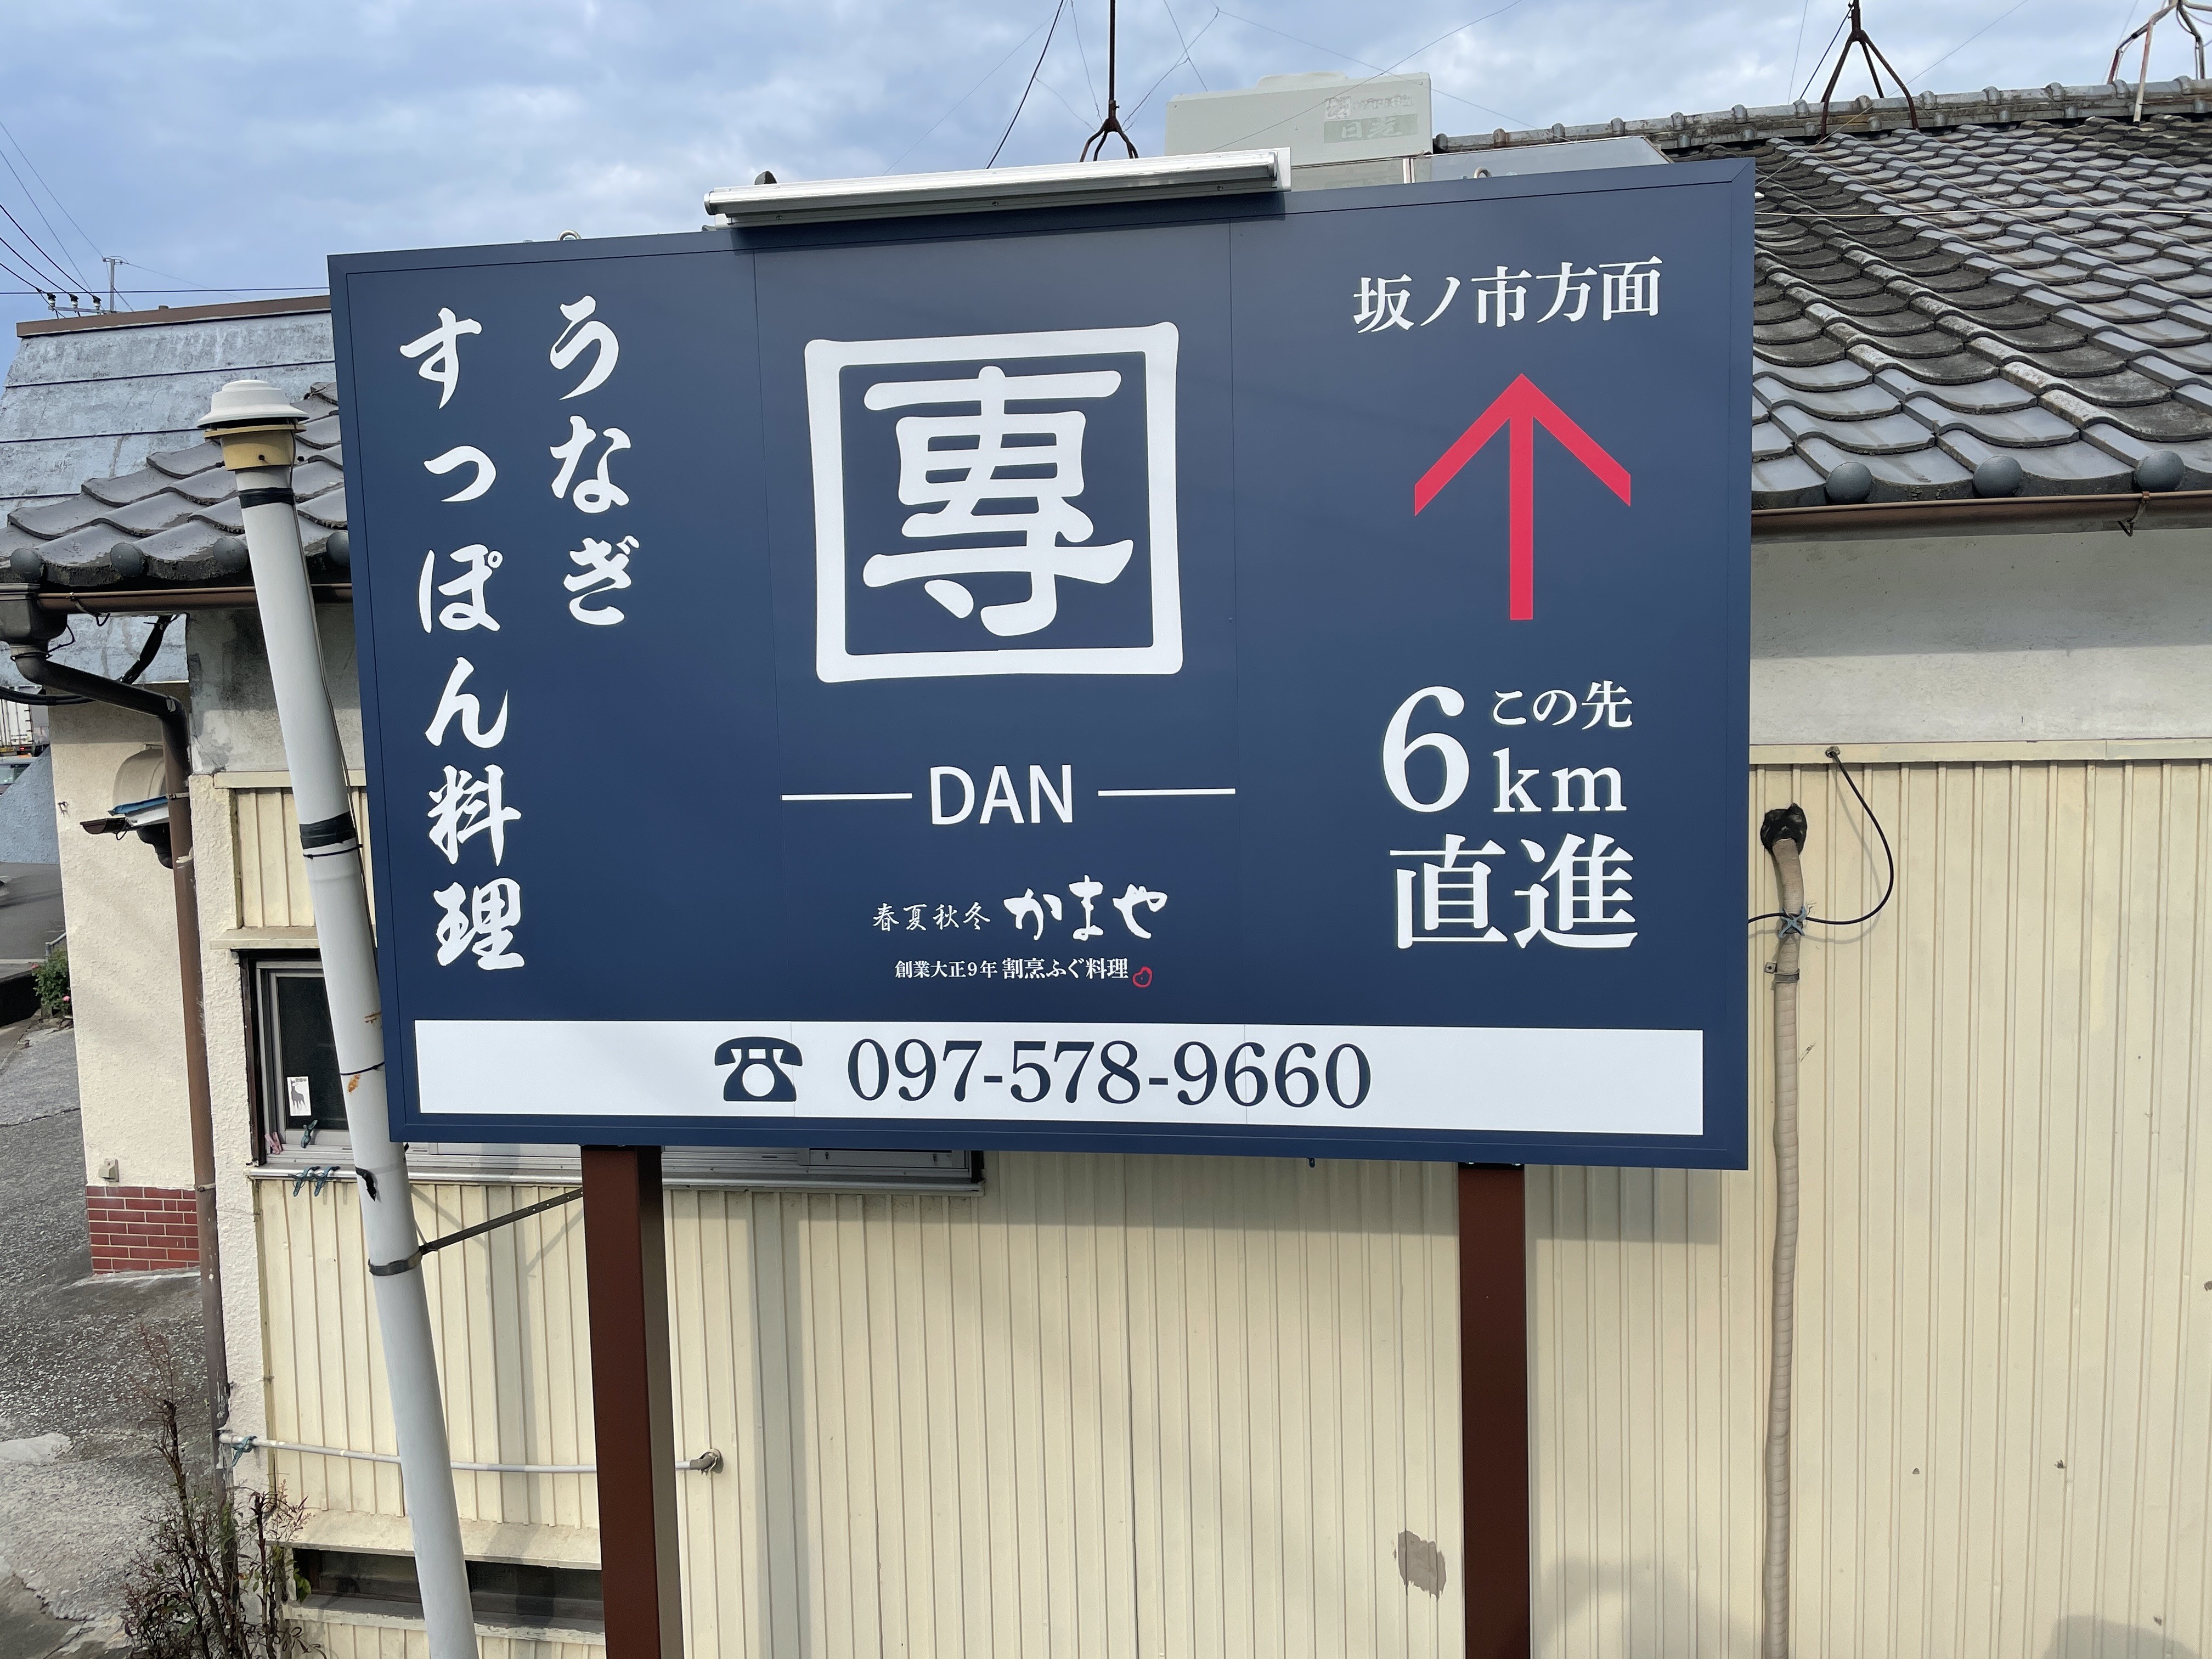 【うなぎ・すっぽん料理店】ロードサイン製作・施工